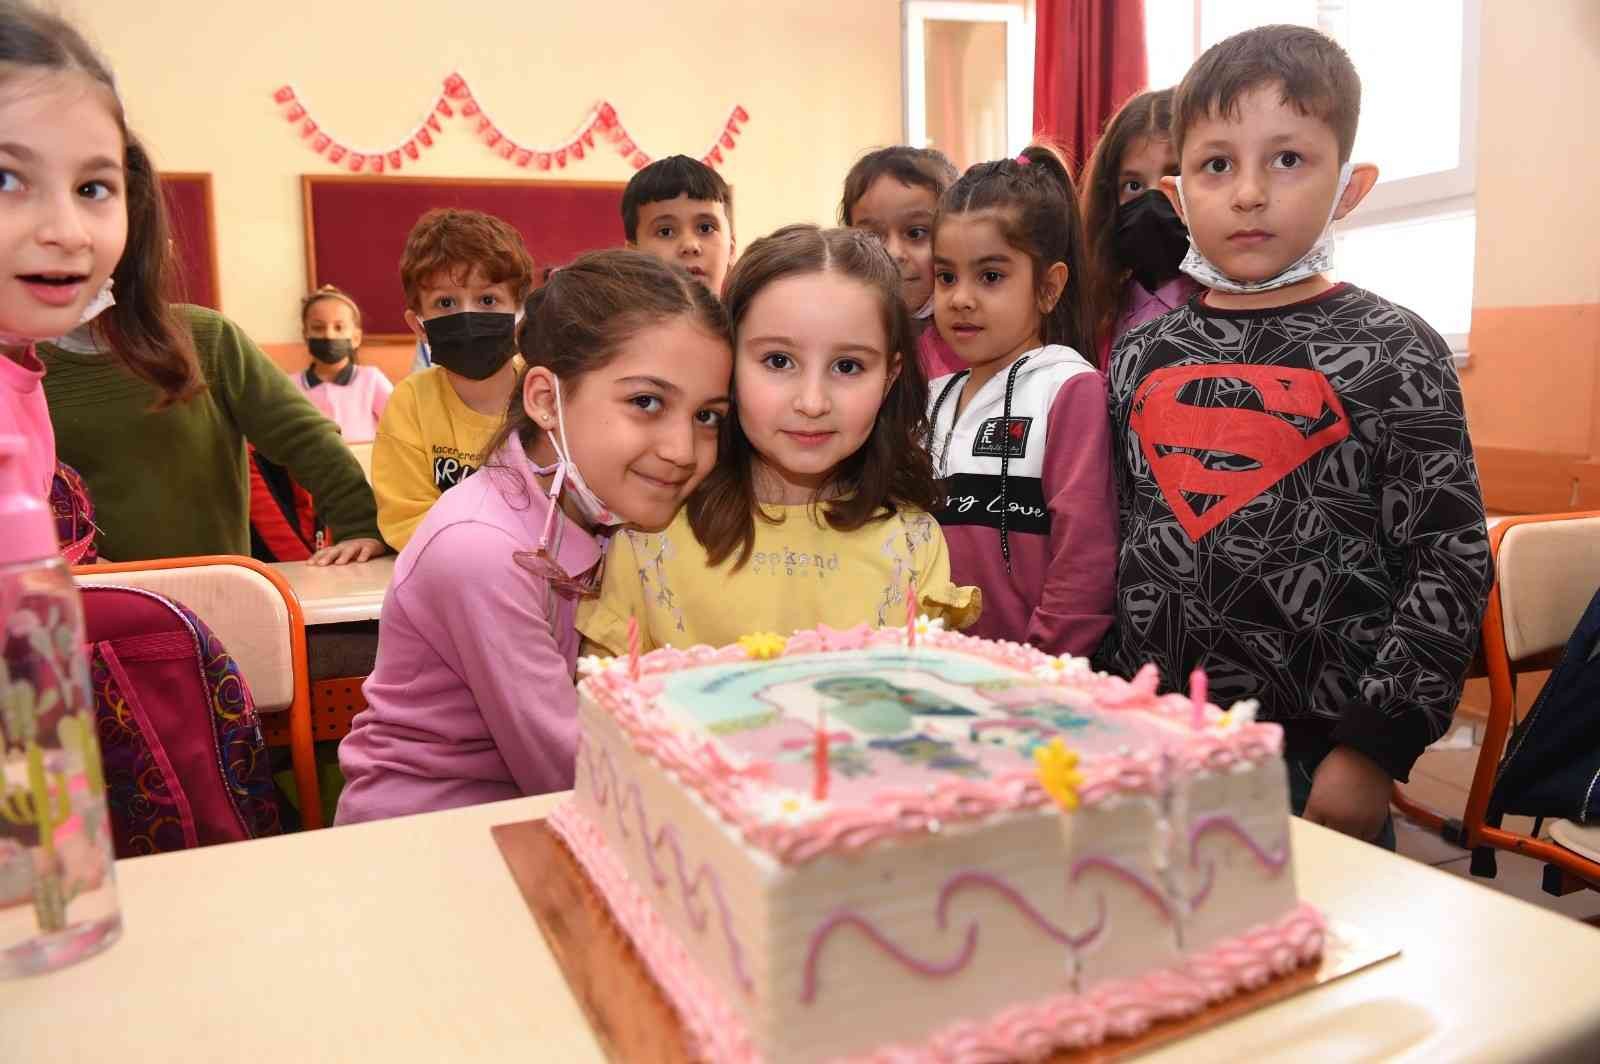 Şehit kızına doğum günü sürprizi #kahramanmaras